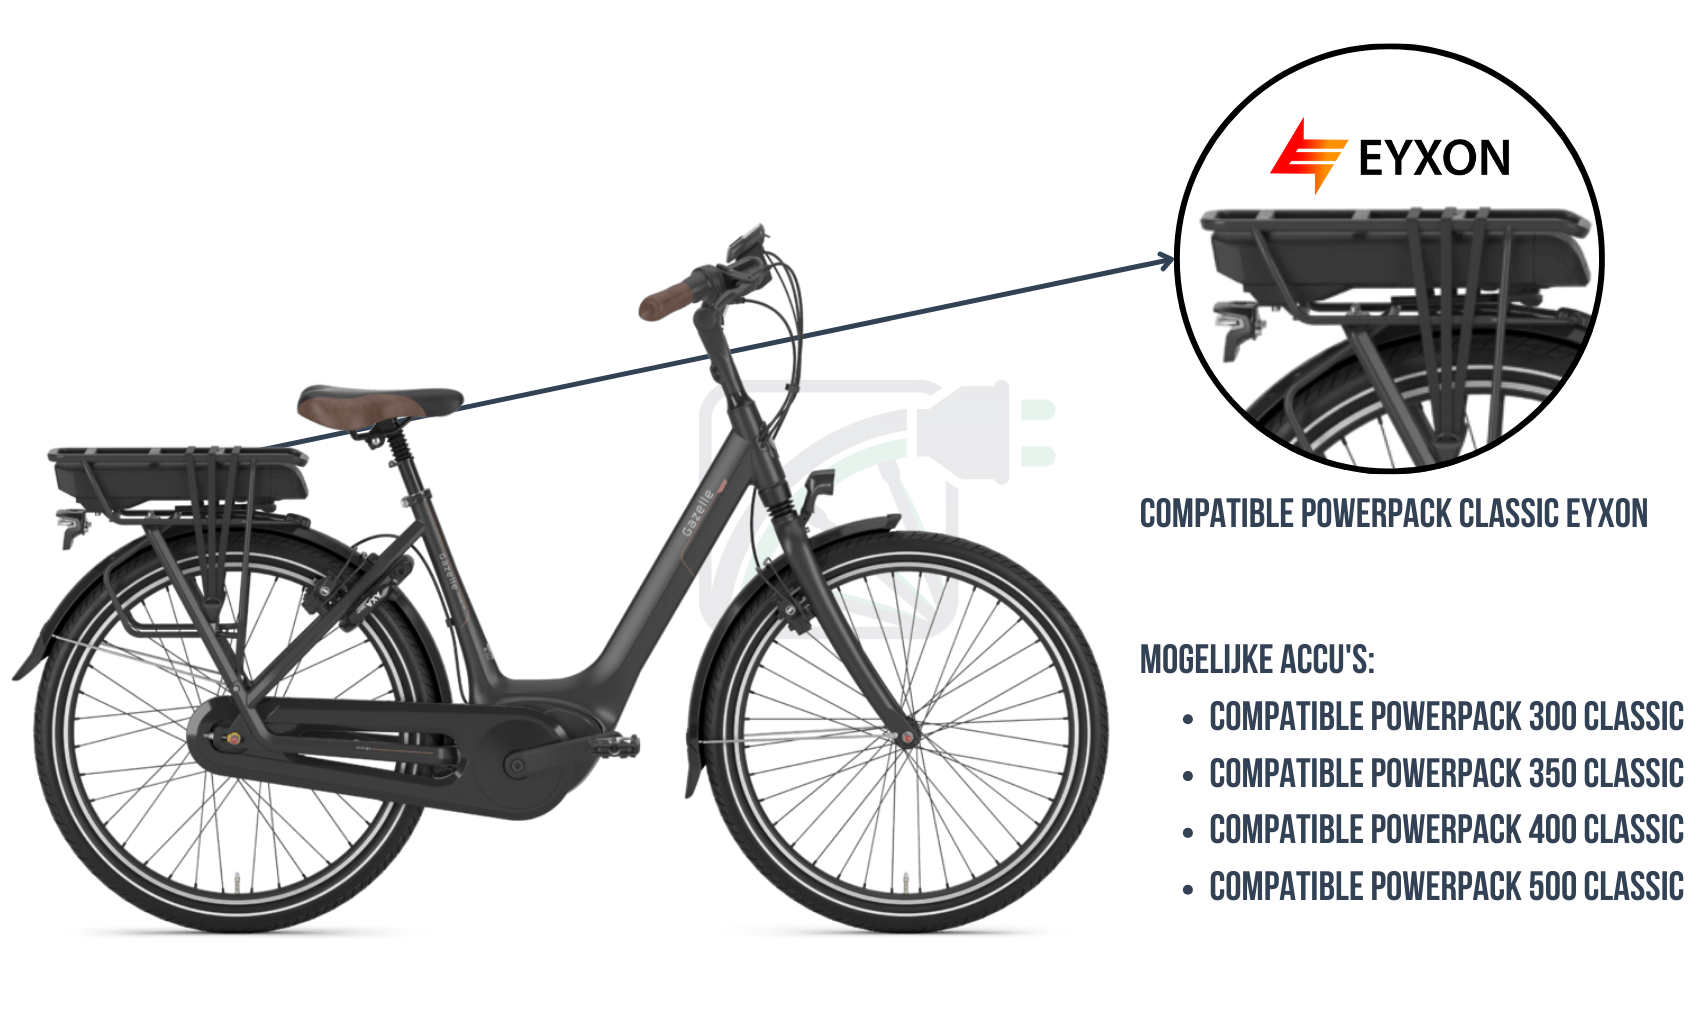 Een deel van de afbeelding is uitvergroot en de accu van de fiets is uitgelicht. De mogelijke accu's voor deze elektrische fiets worden ook genoemd. Ze zijn Powerpack classic bosch compatibel.